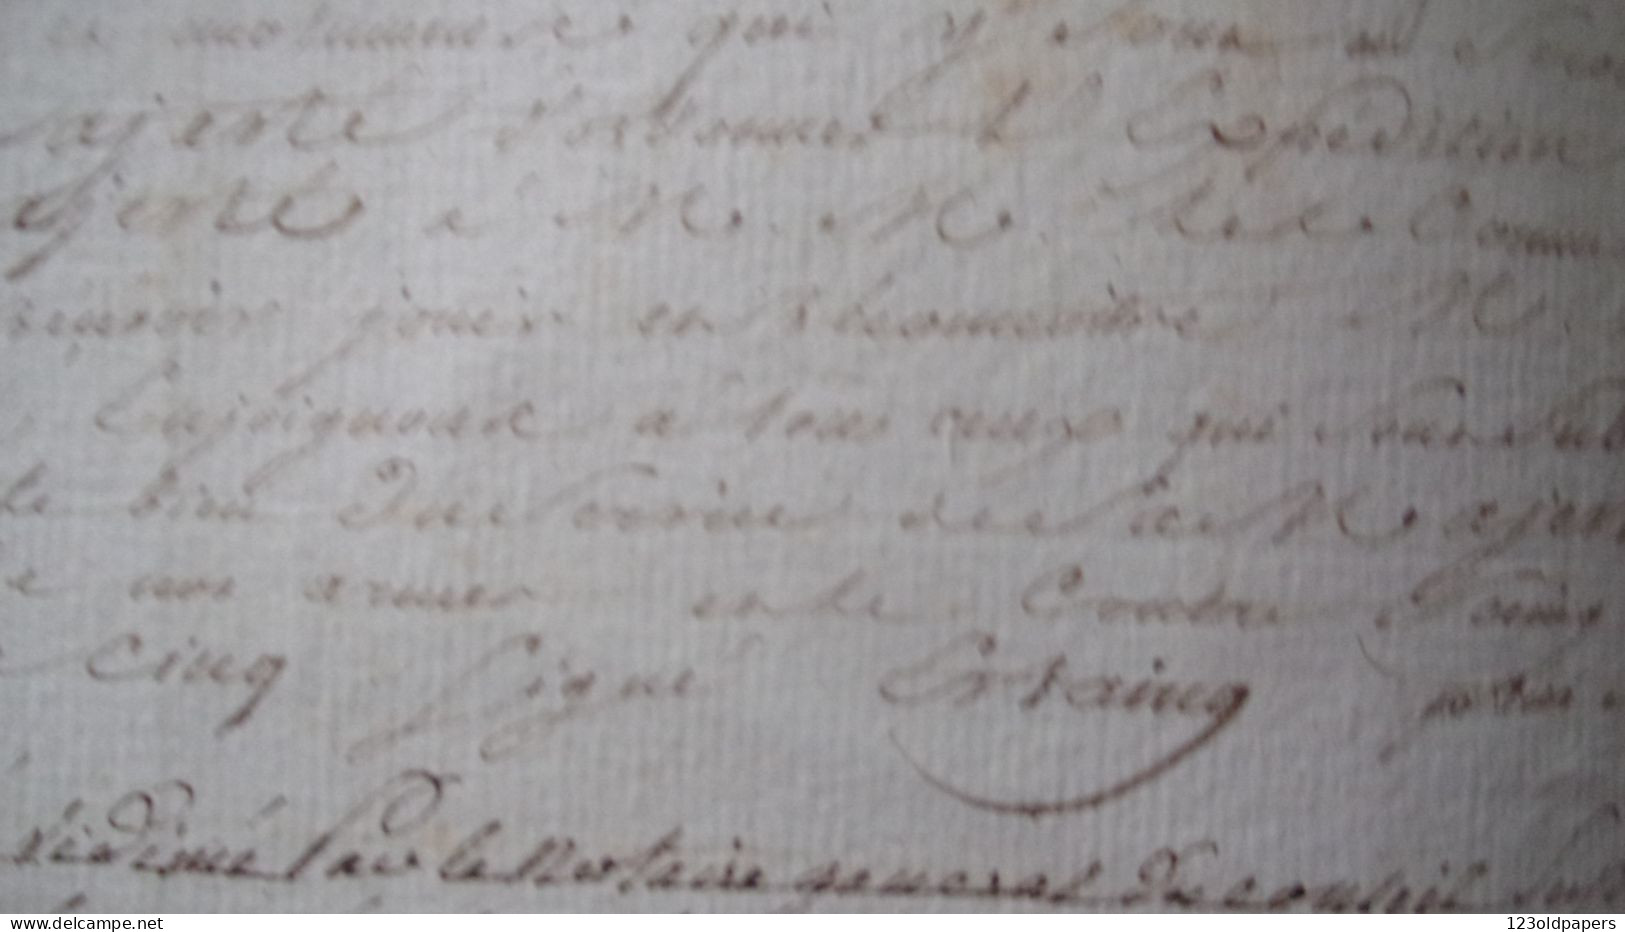 1765 HAITI LEOGANE BEQUINI / LIEUTENANT GENERAL DES ARMEES  COMTE ESTAING PORT AU PRINCE NOMINATION COLONEL PROVINCIAL D